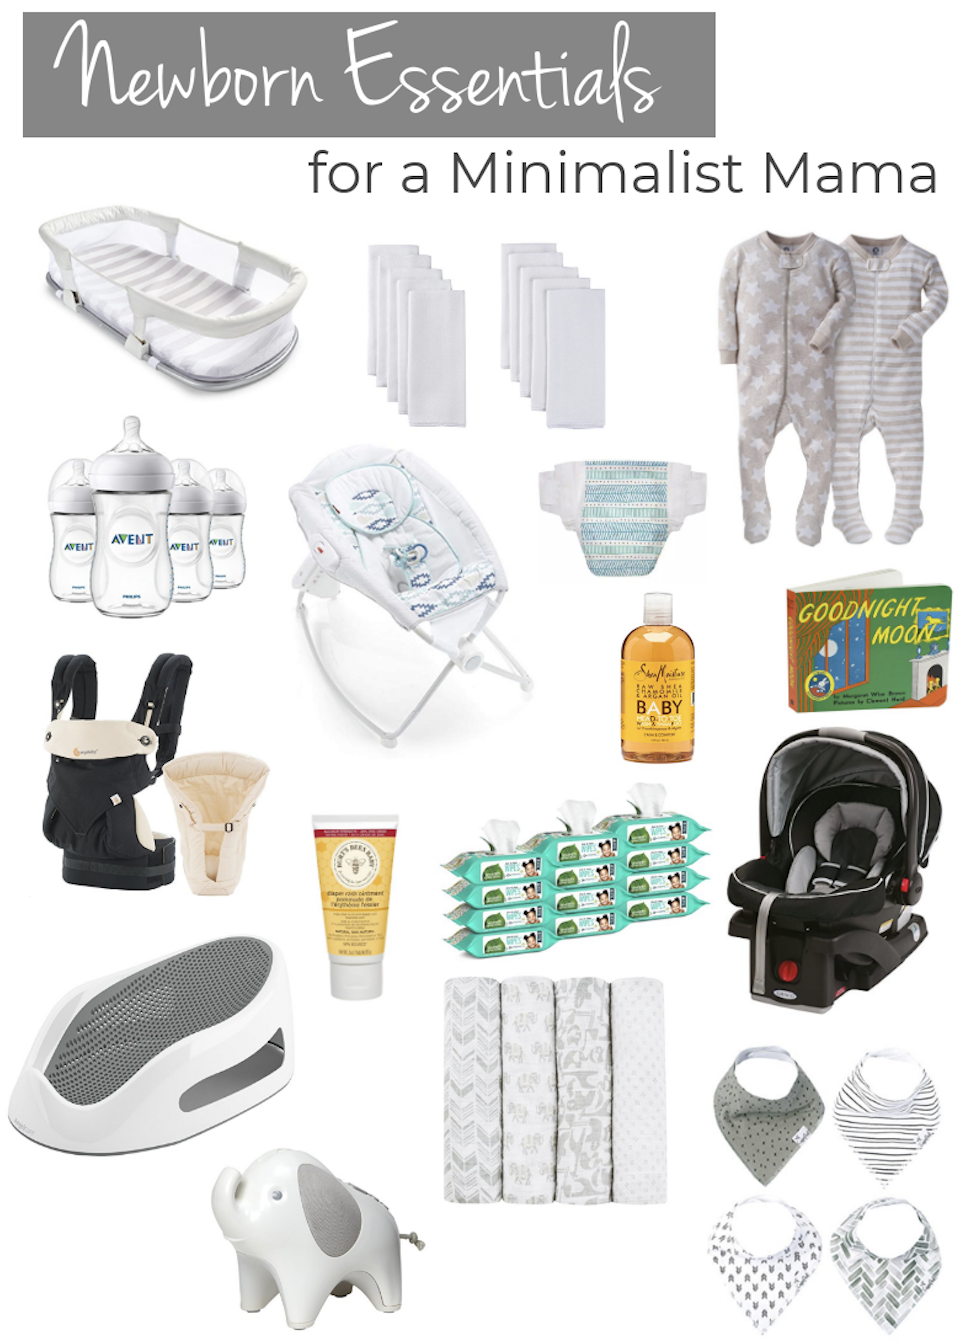 Newborn Essentials for a Minimalist Mama